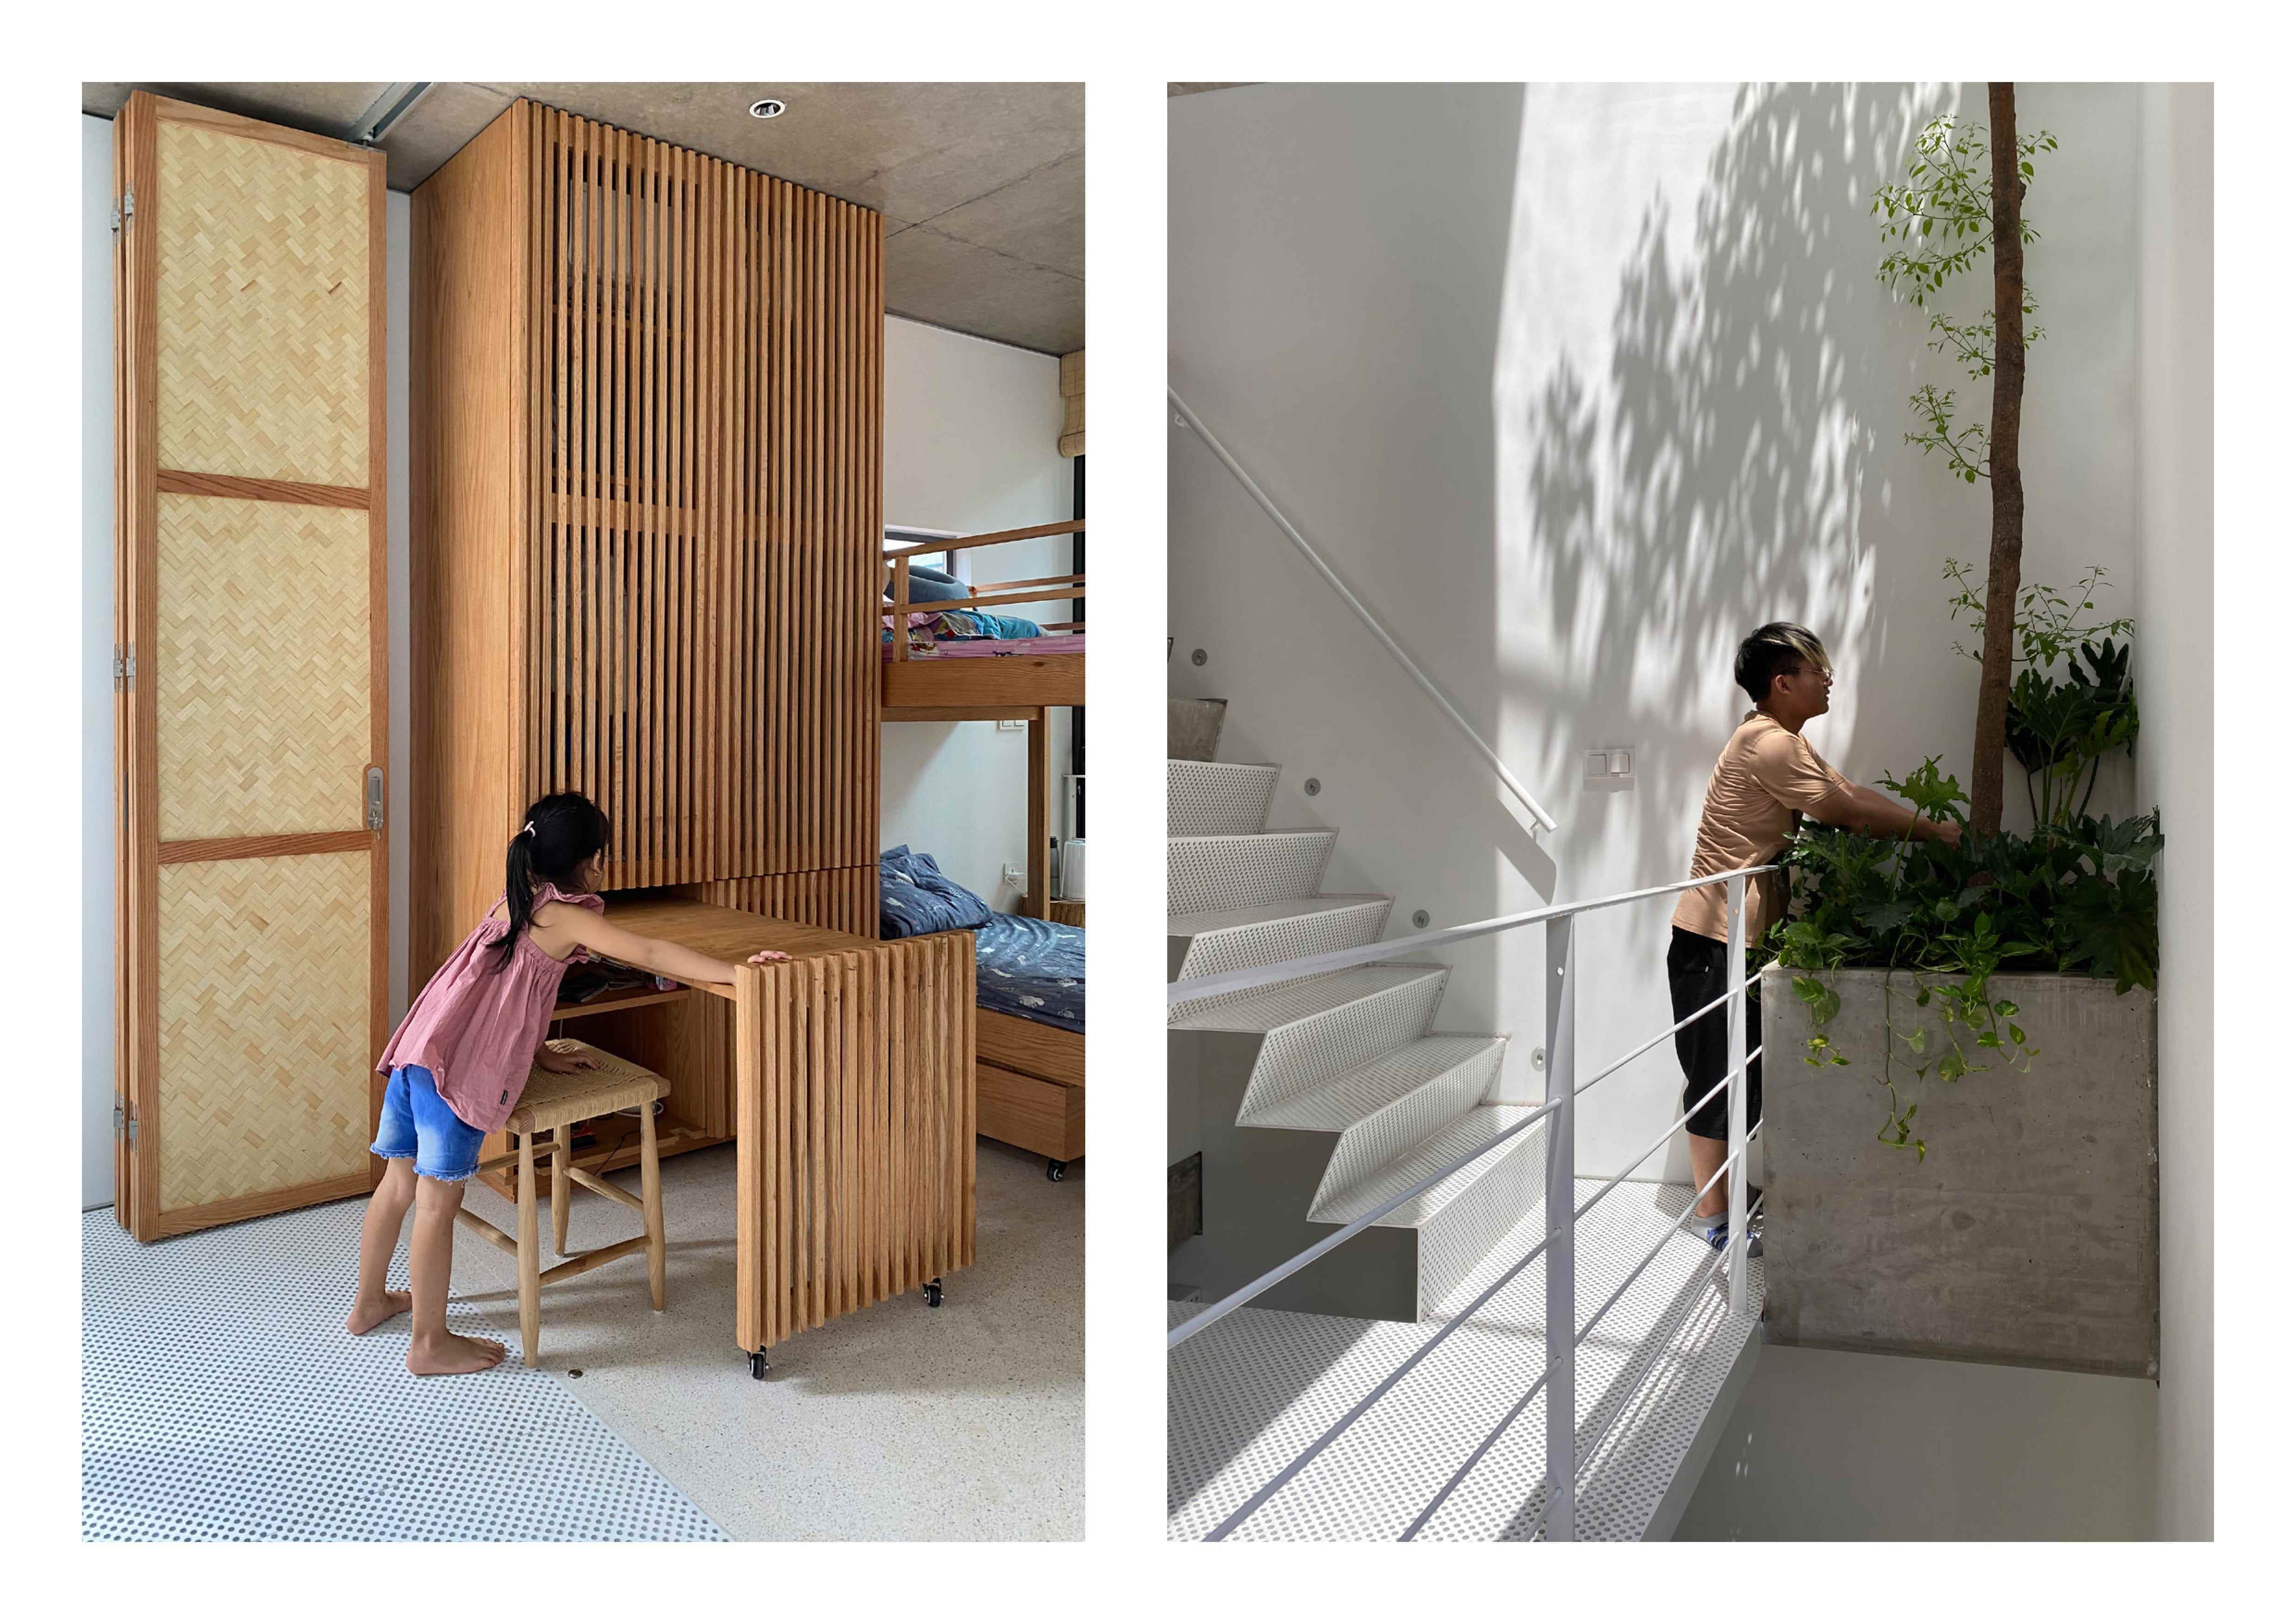 Die Architekten integrierten platzsparende Möbeldesigns sowie Begrünung in den Räumen.